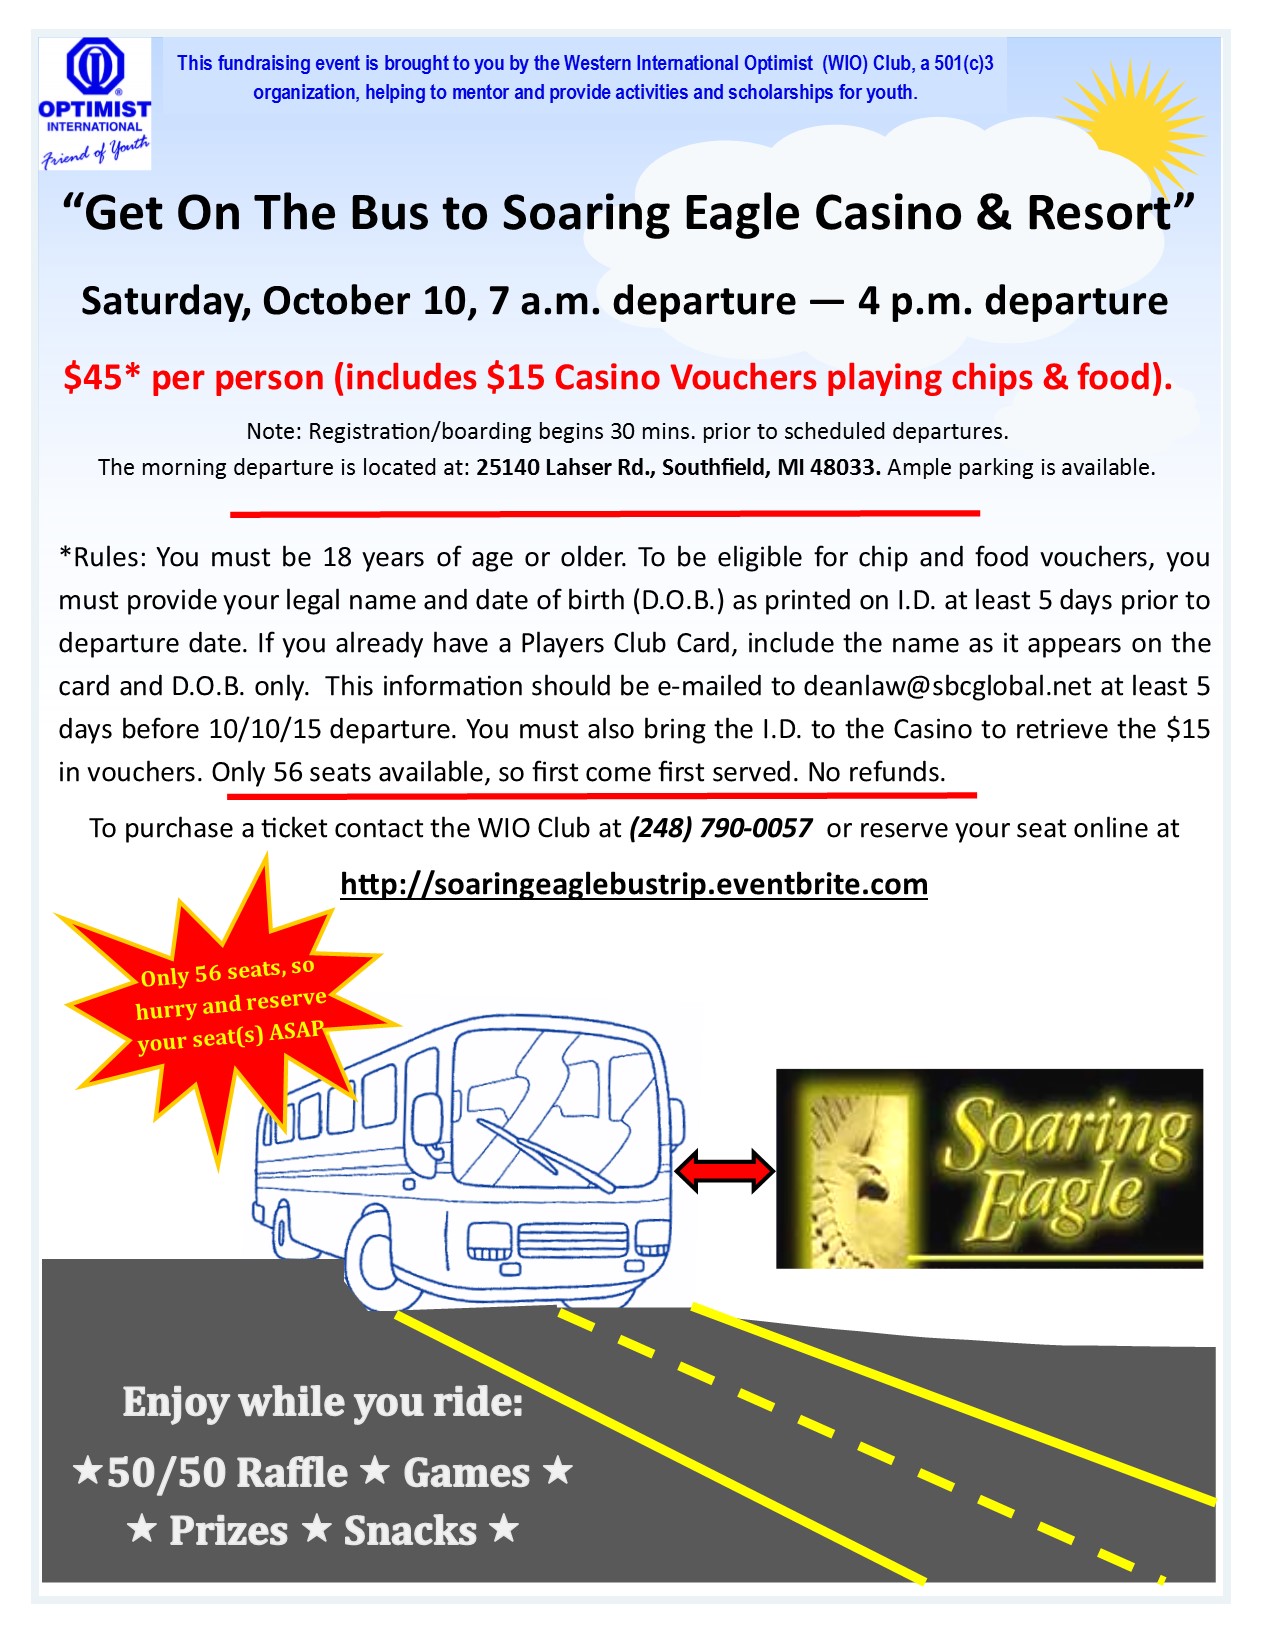 dane cook soaring eagle casino ticket cost